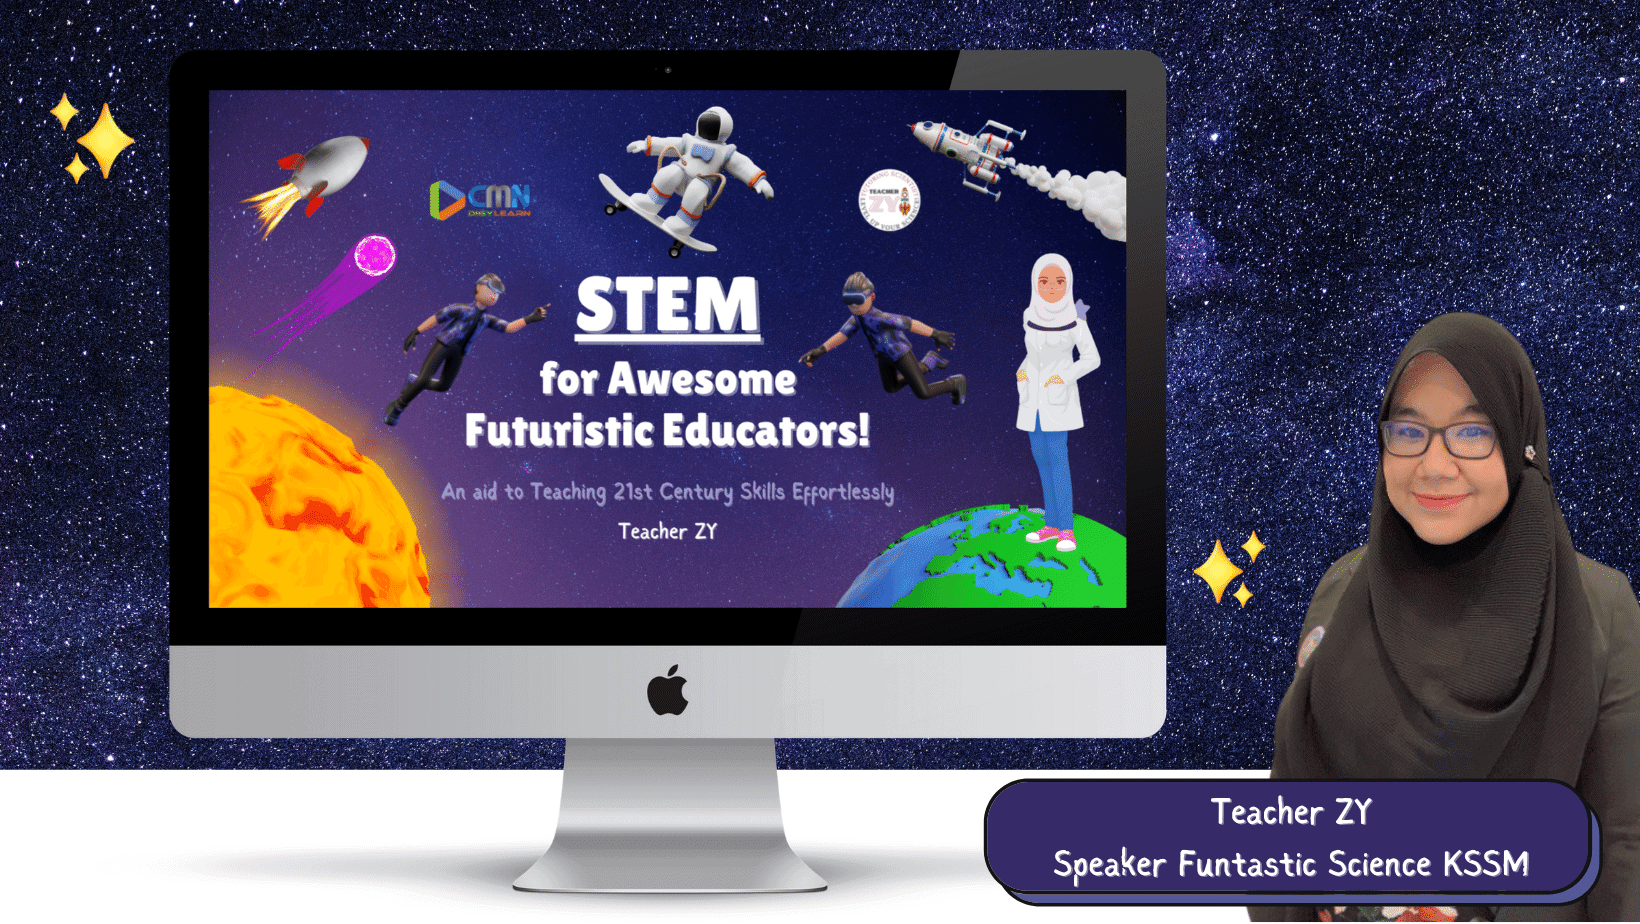 STEM for Awesome Futuristic Educators!